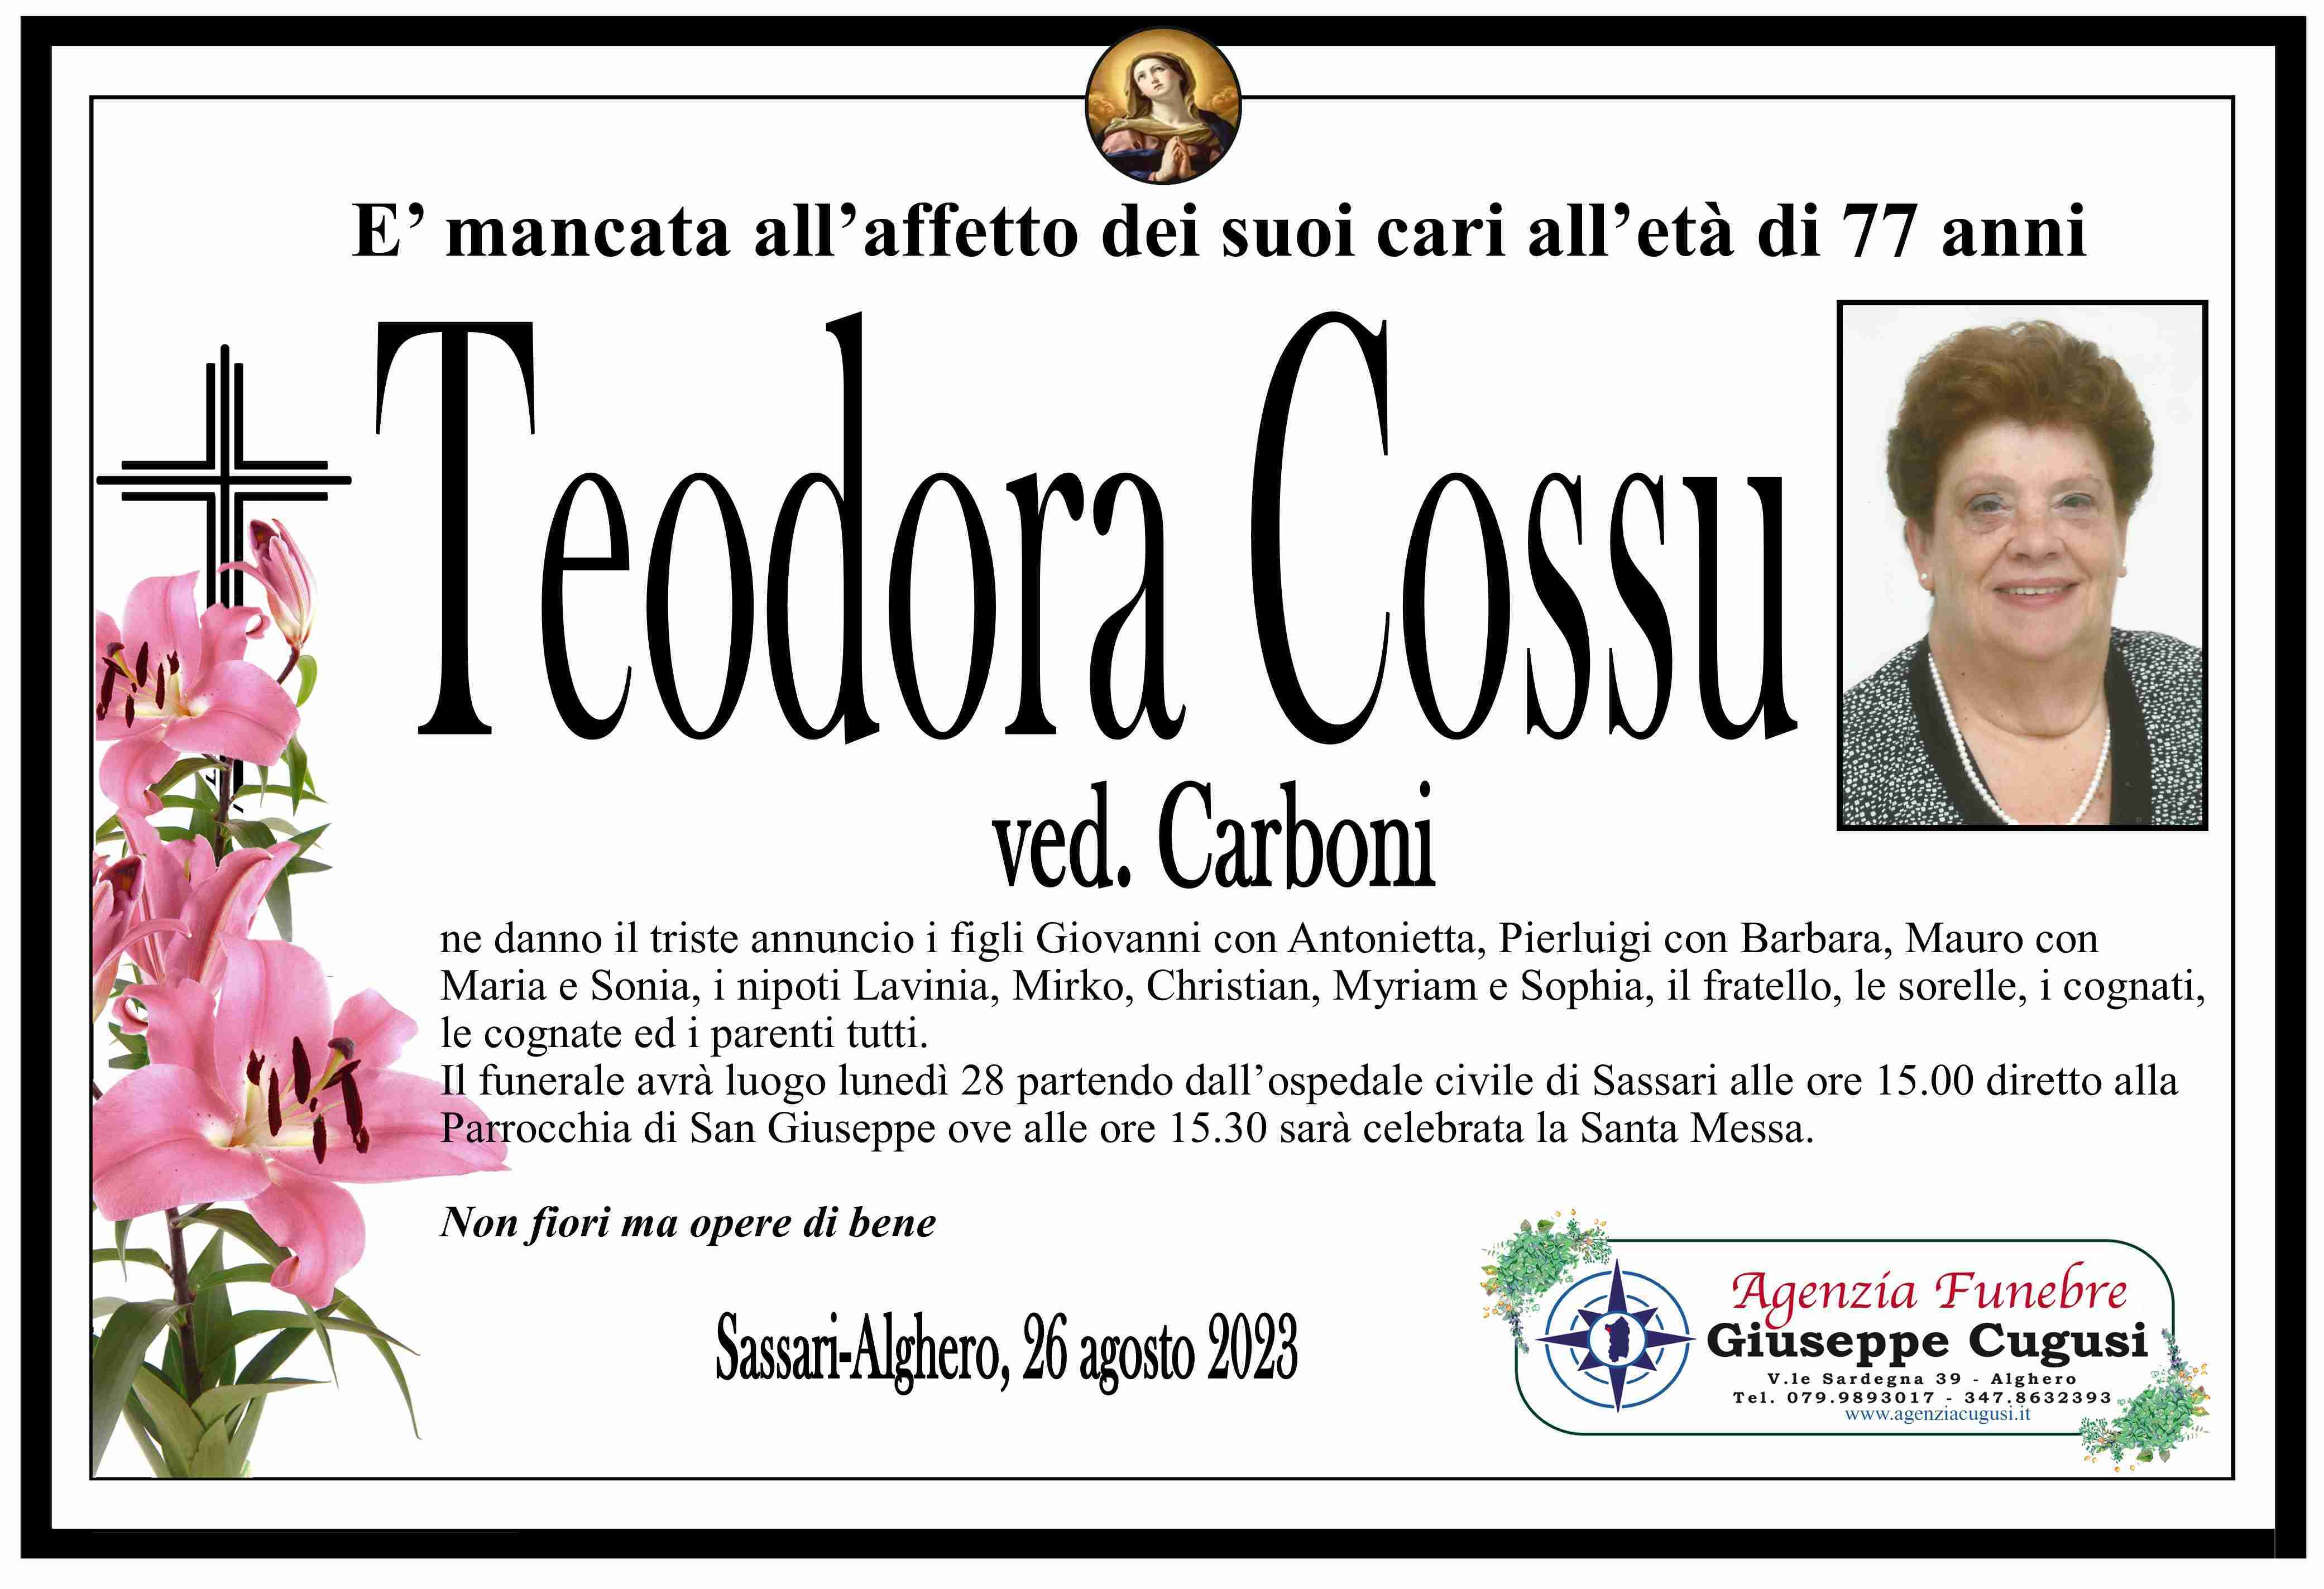 Teodora Cossu